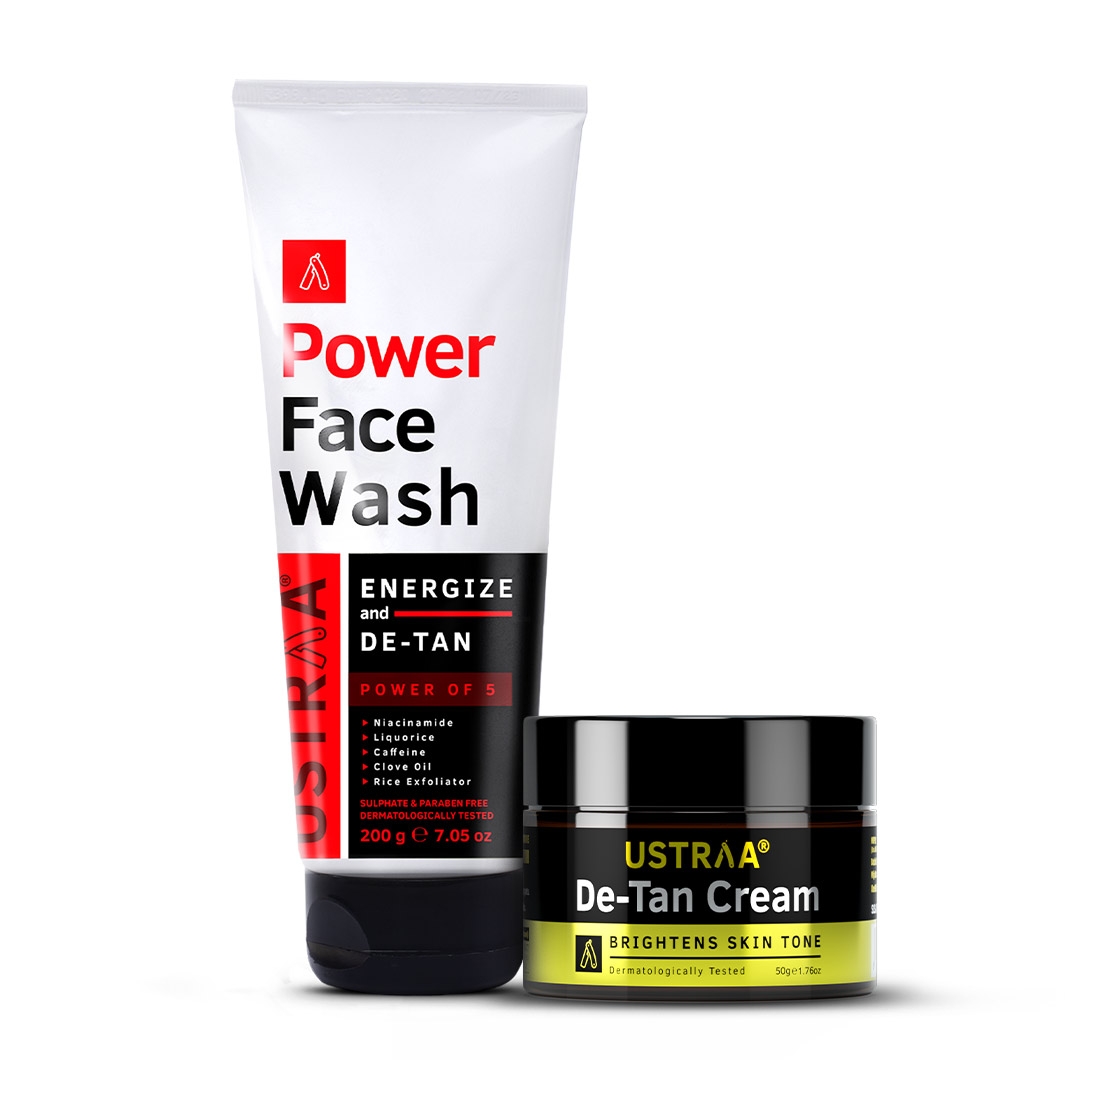 Ustraa Power Face Wash De-Tan - 200g & De-Tan Cream - 50g